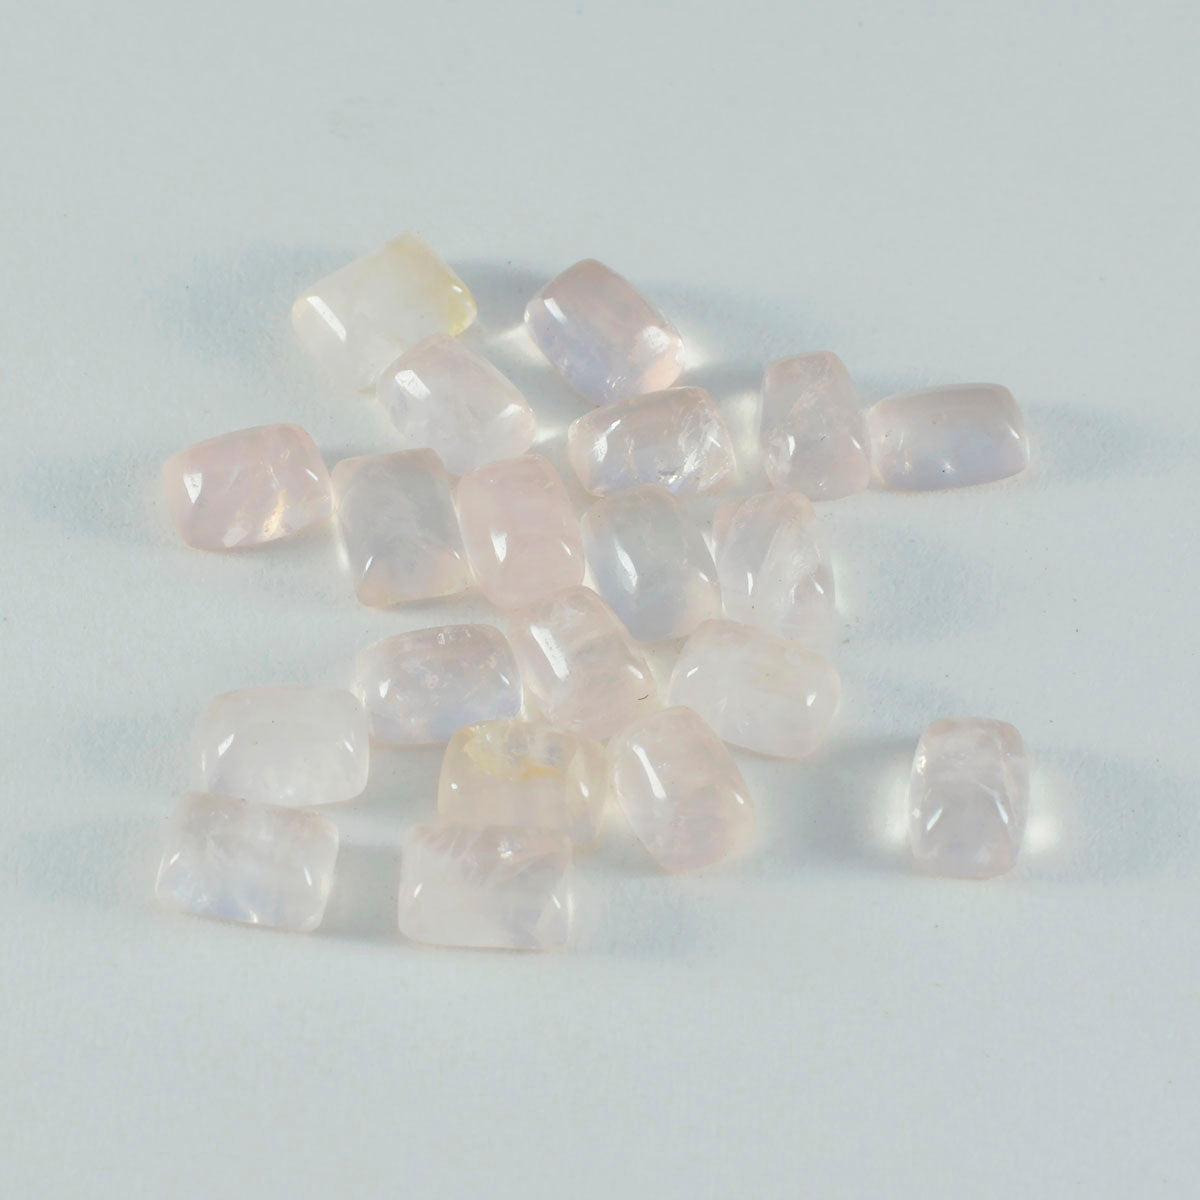 Riyogems 1pc cabochon de quartz rose rose 6x8mm forme octogonale qualité étonnante pierre en vrac